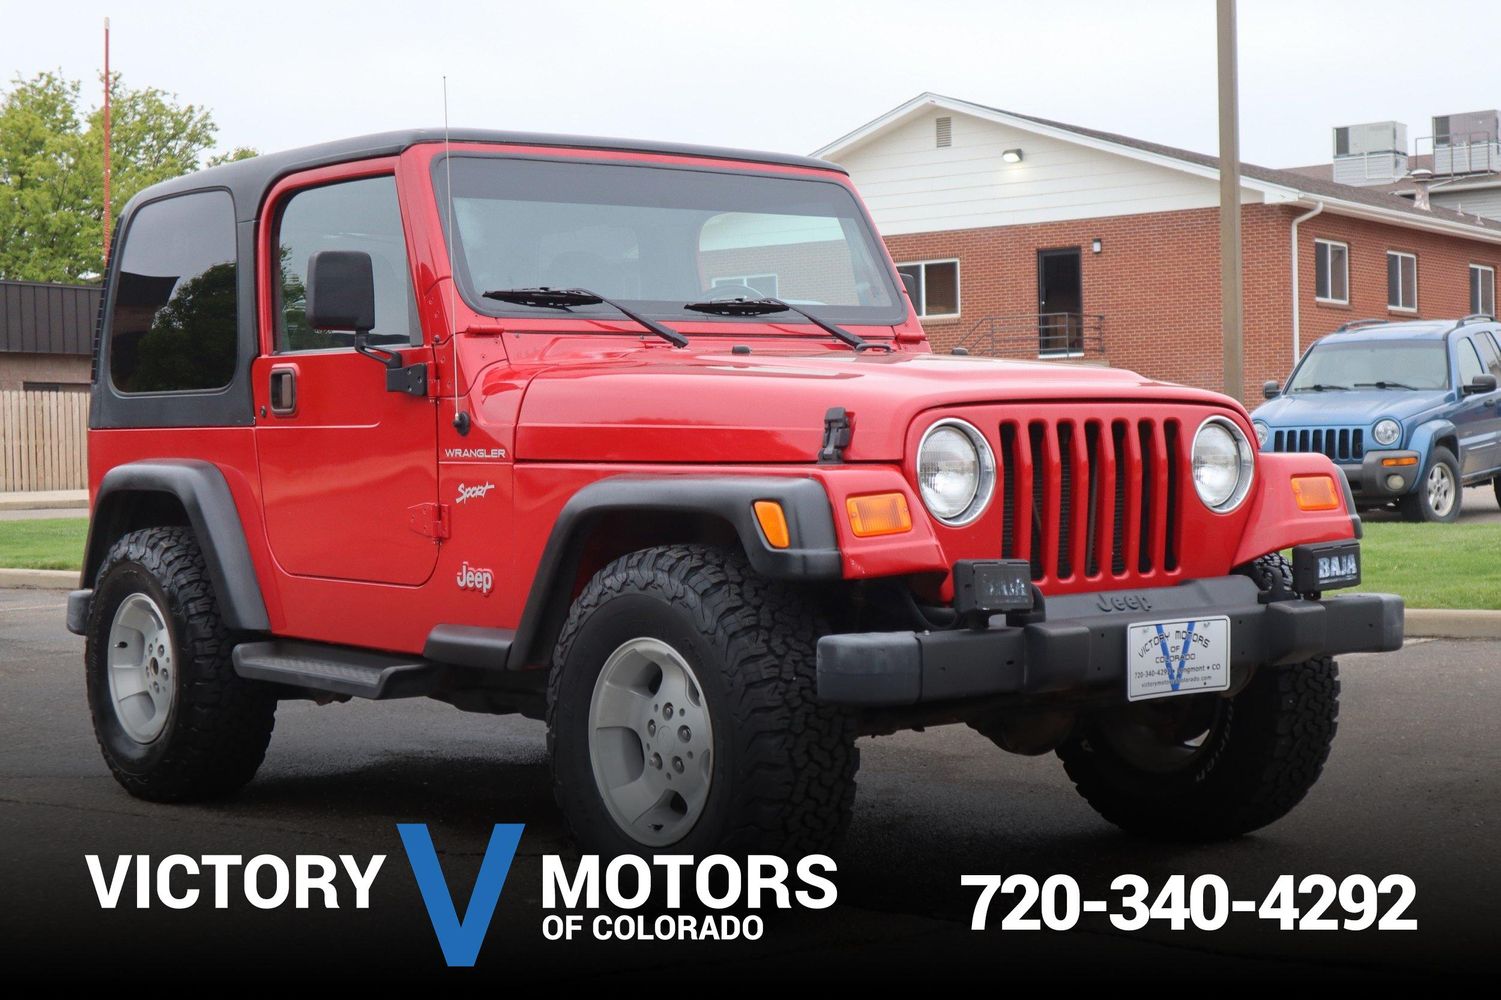 2002 Jeep Wrangler Sport | Victory Motors of Colorado